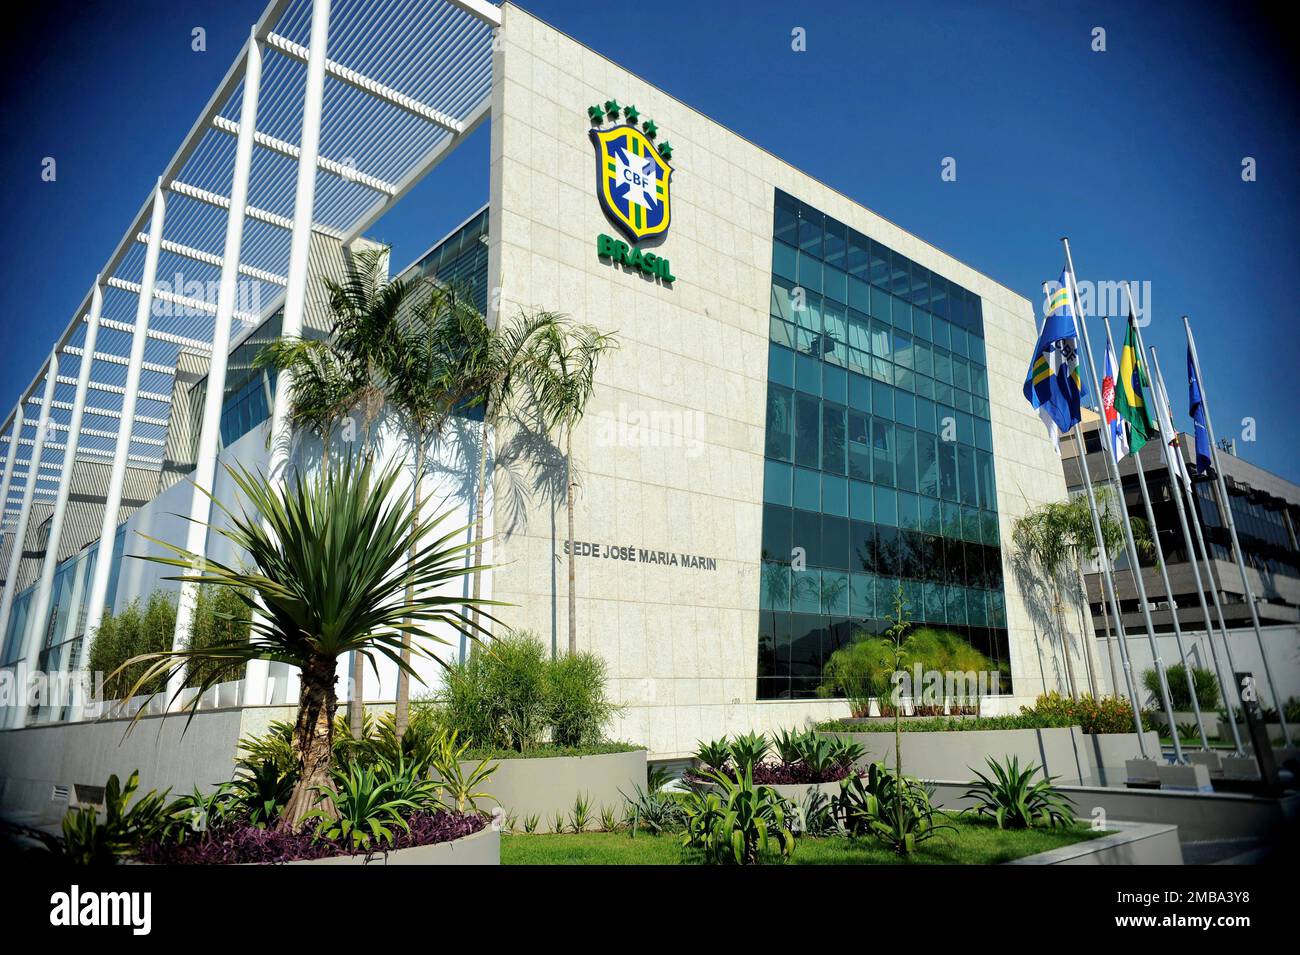 Bâtiment du siège de la CBF de la Confédération brésilienne de football, vue générale. L'emblème de la confédération du football est vu sur le devant - 07.17.2014 Banque D'Images